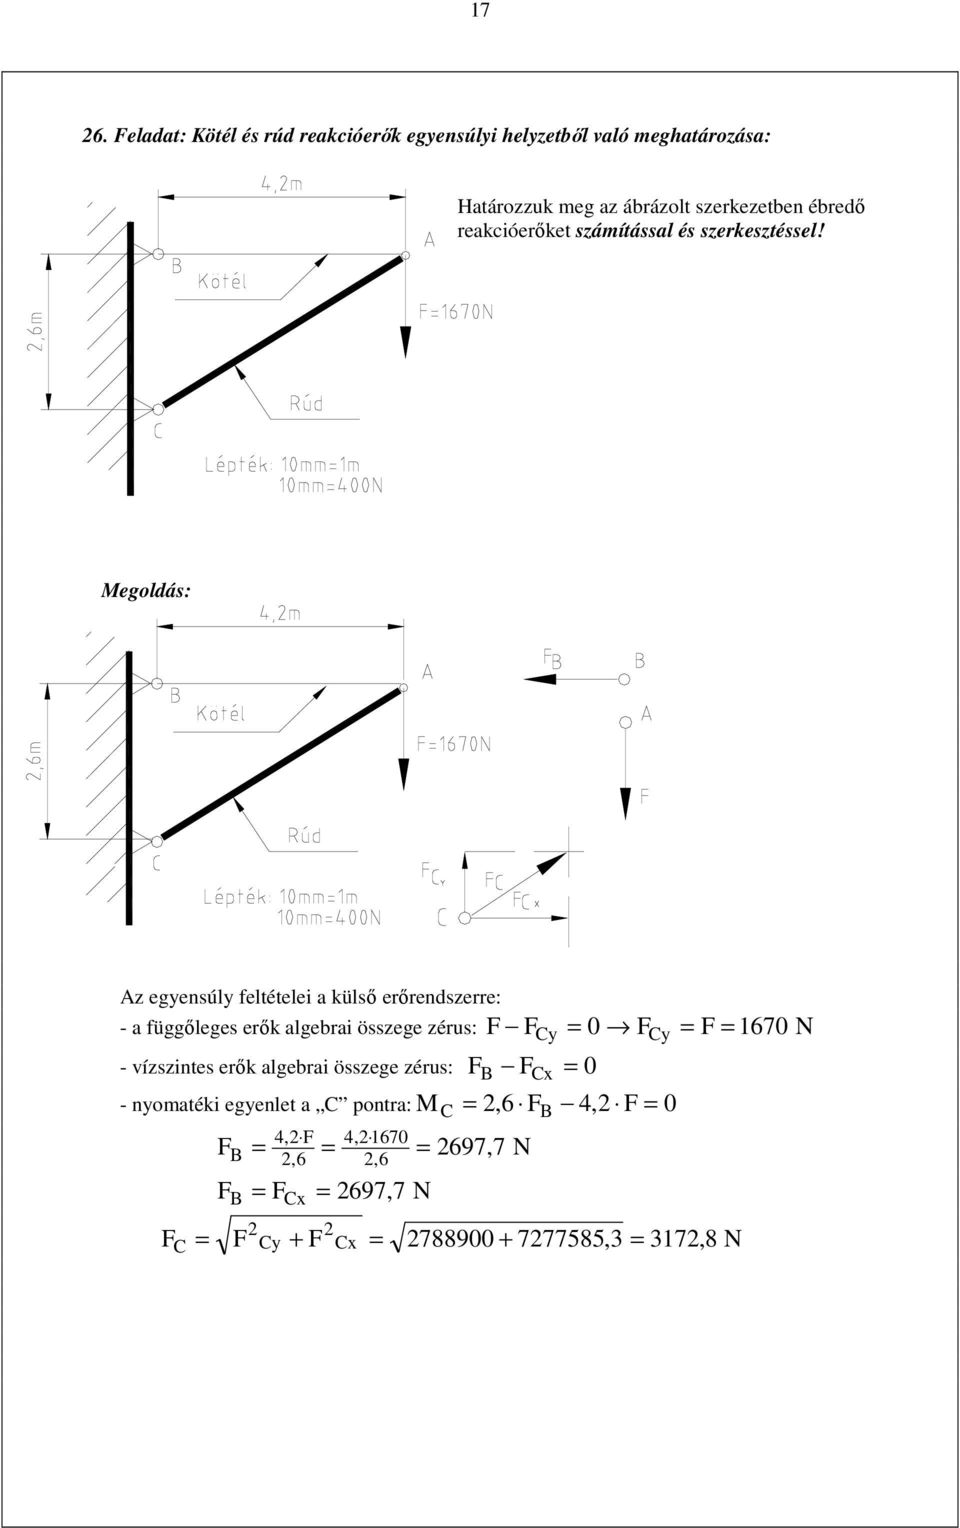 z egyenúly feltételei a külı erırendzerre: - a függılege erık algebrai özege zéru: Cy Cy 67 N -